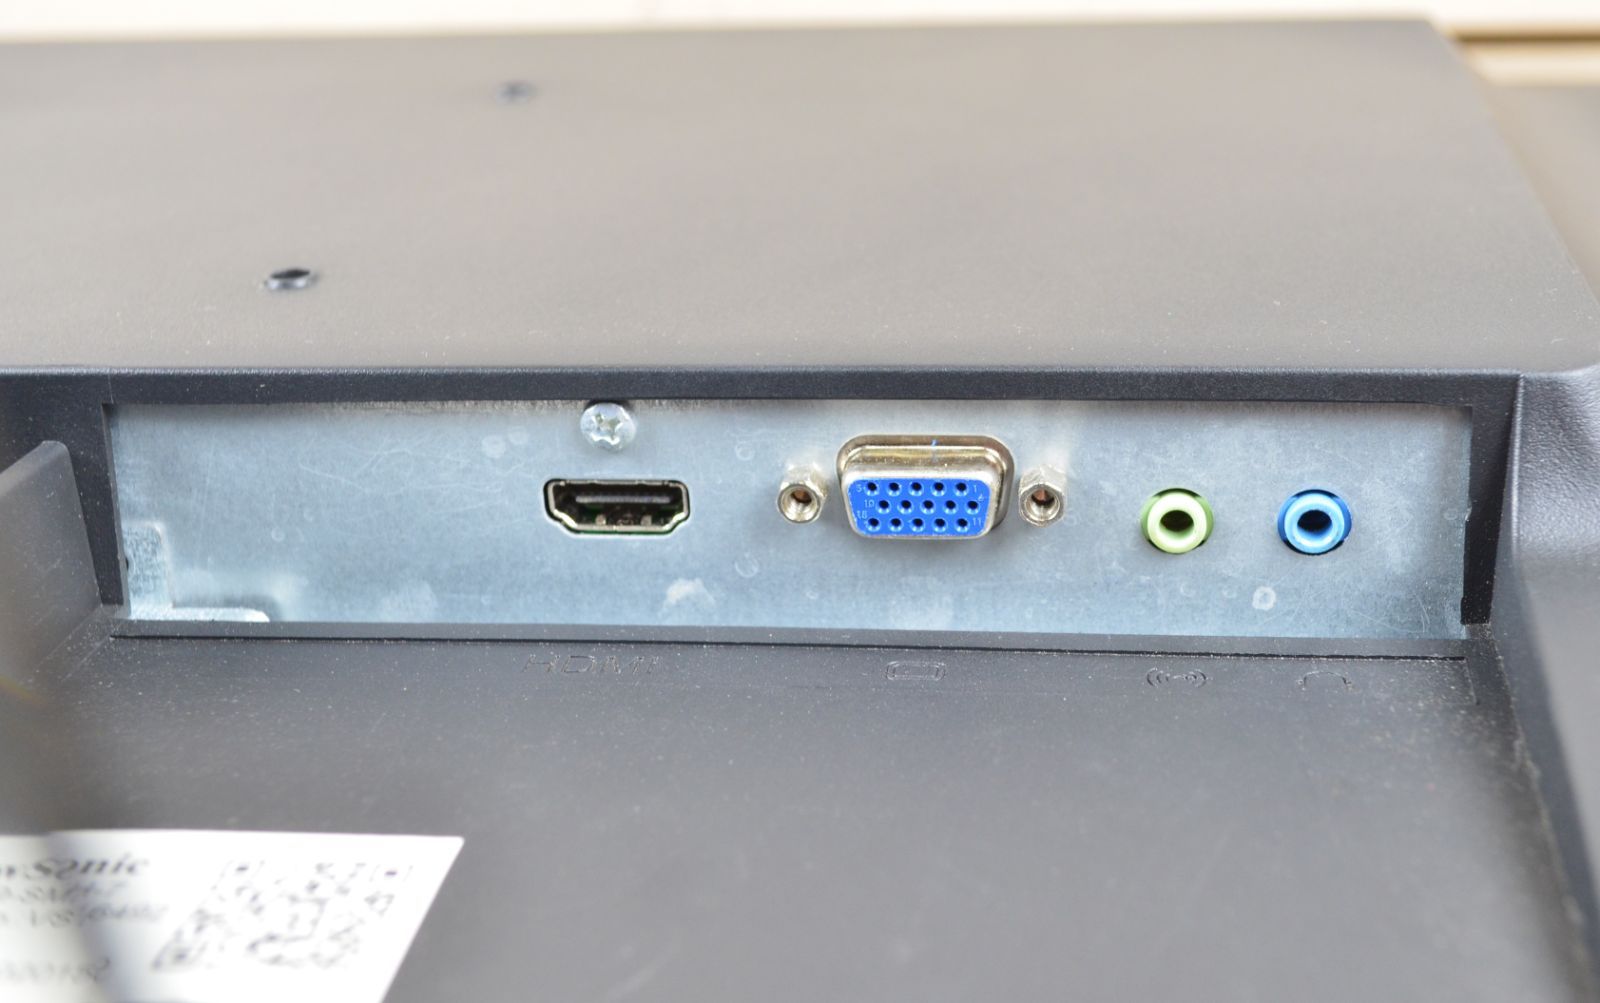 ViewSonic　狭額　27型　フルHD　HDMI　スピーカー　IPS　LED